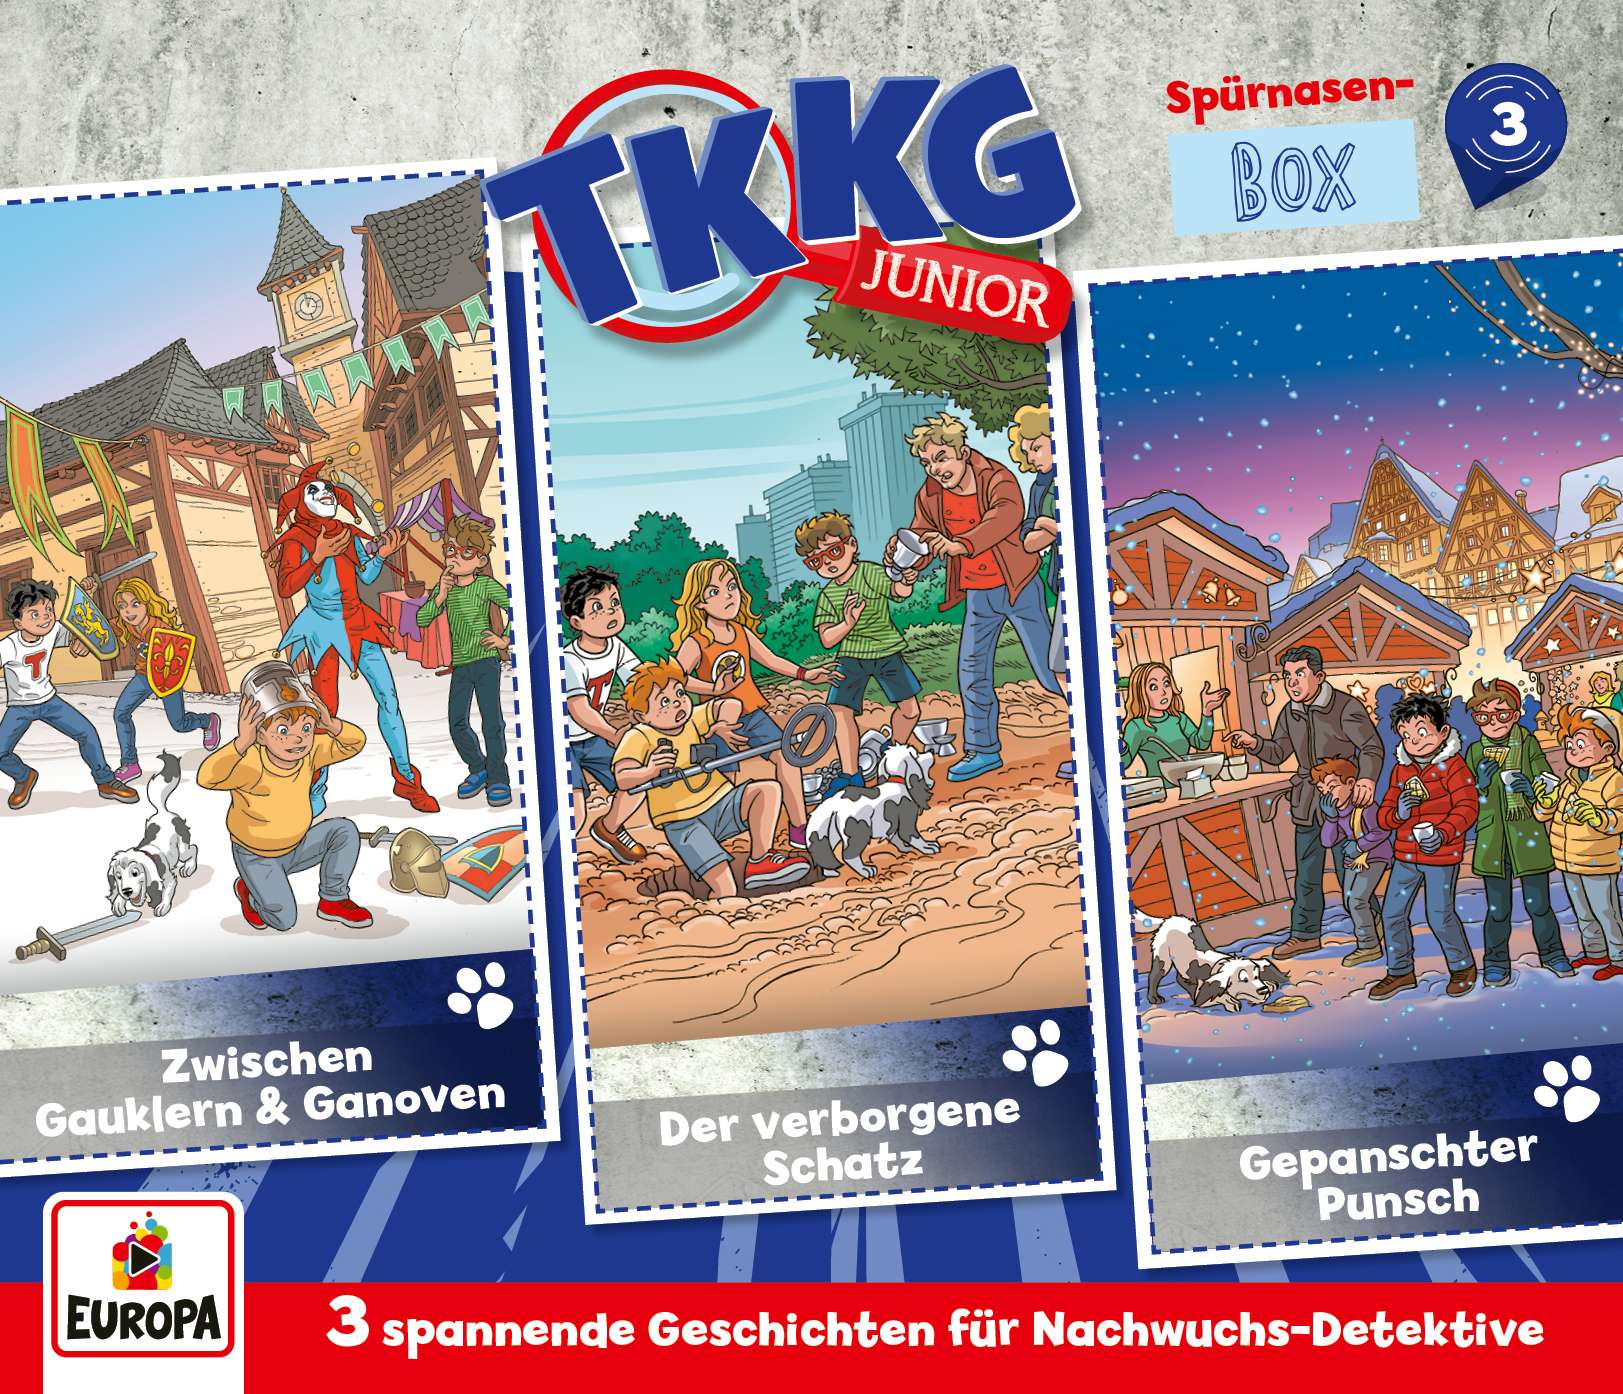 TKKG Junior - Spürnasen-Box (Folgen 7, 8, 9)